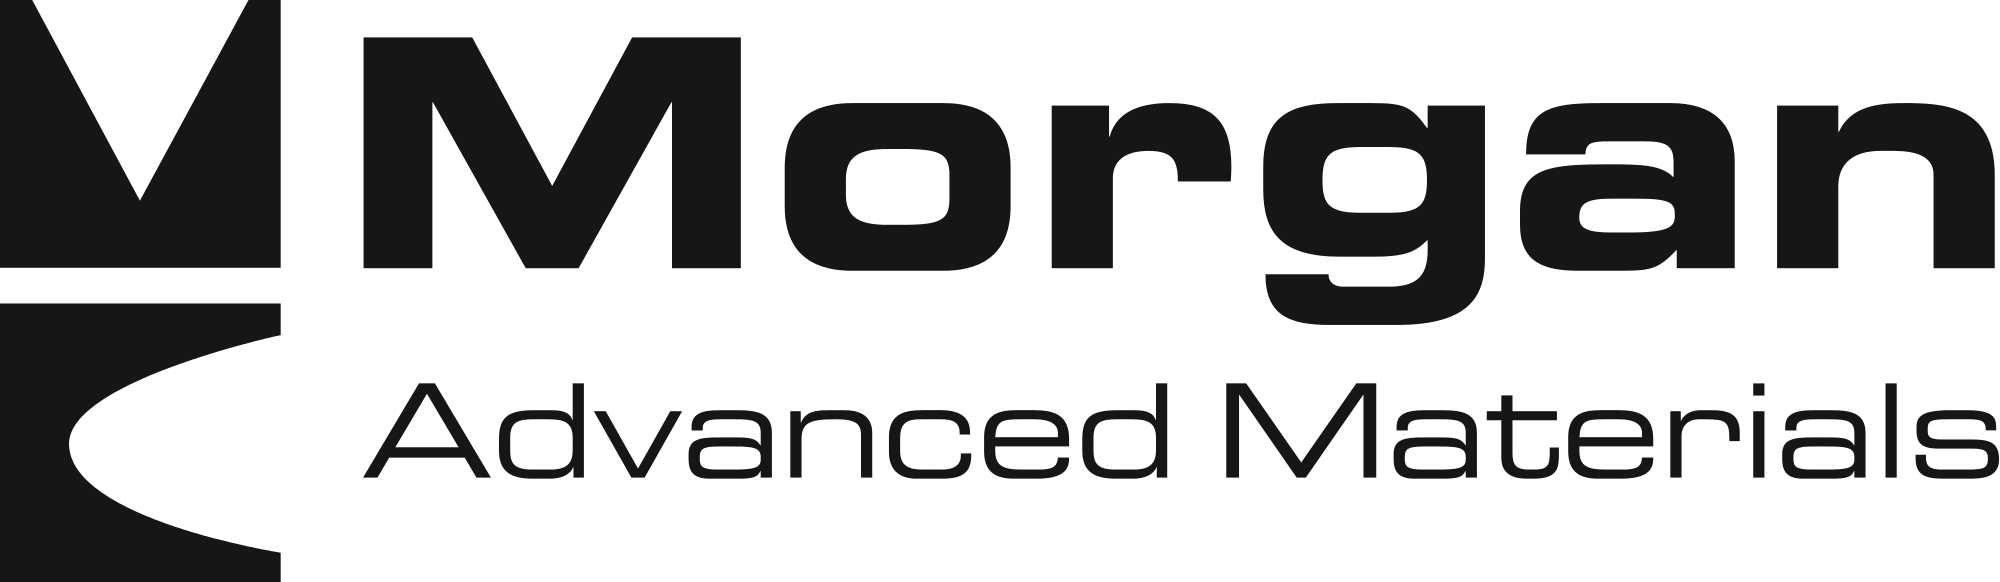 Morgan Advanced Materials - Seals and Bearings